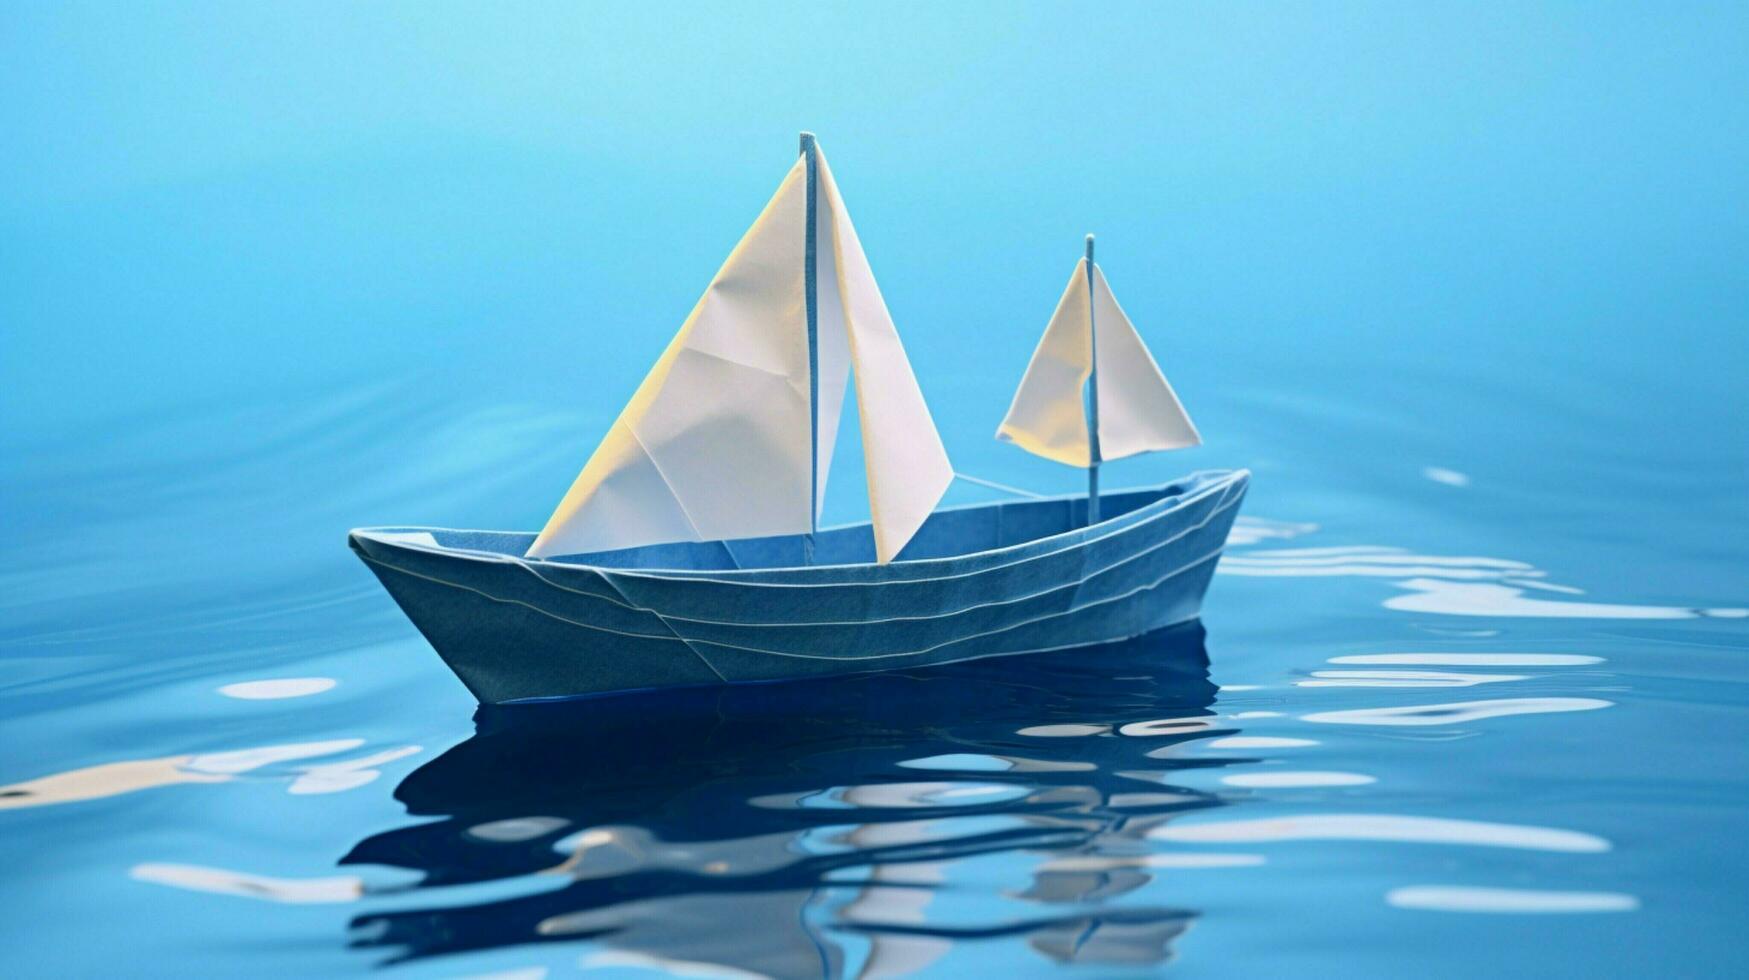 origami papier boot zeilen Aan blauw water een creatief reis foto